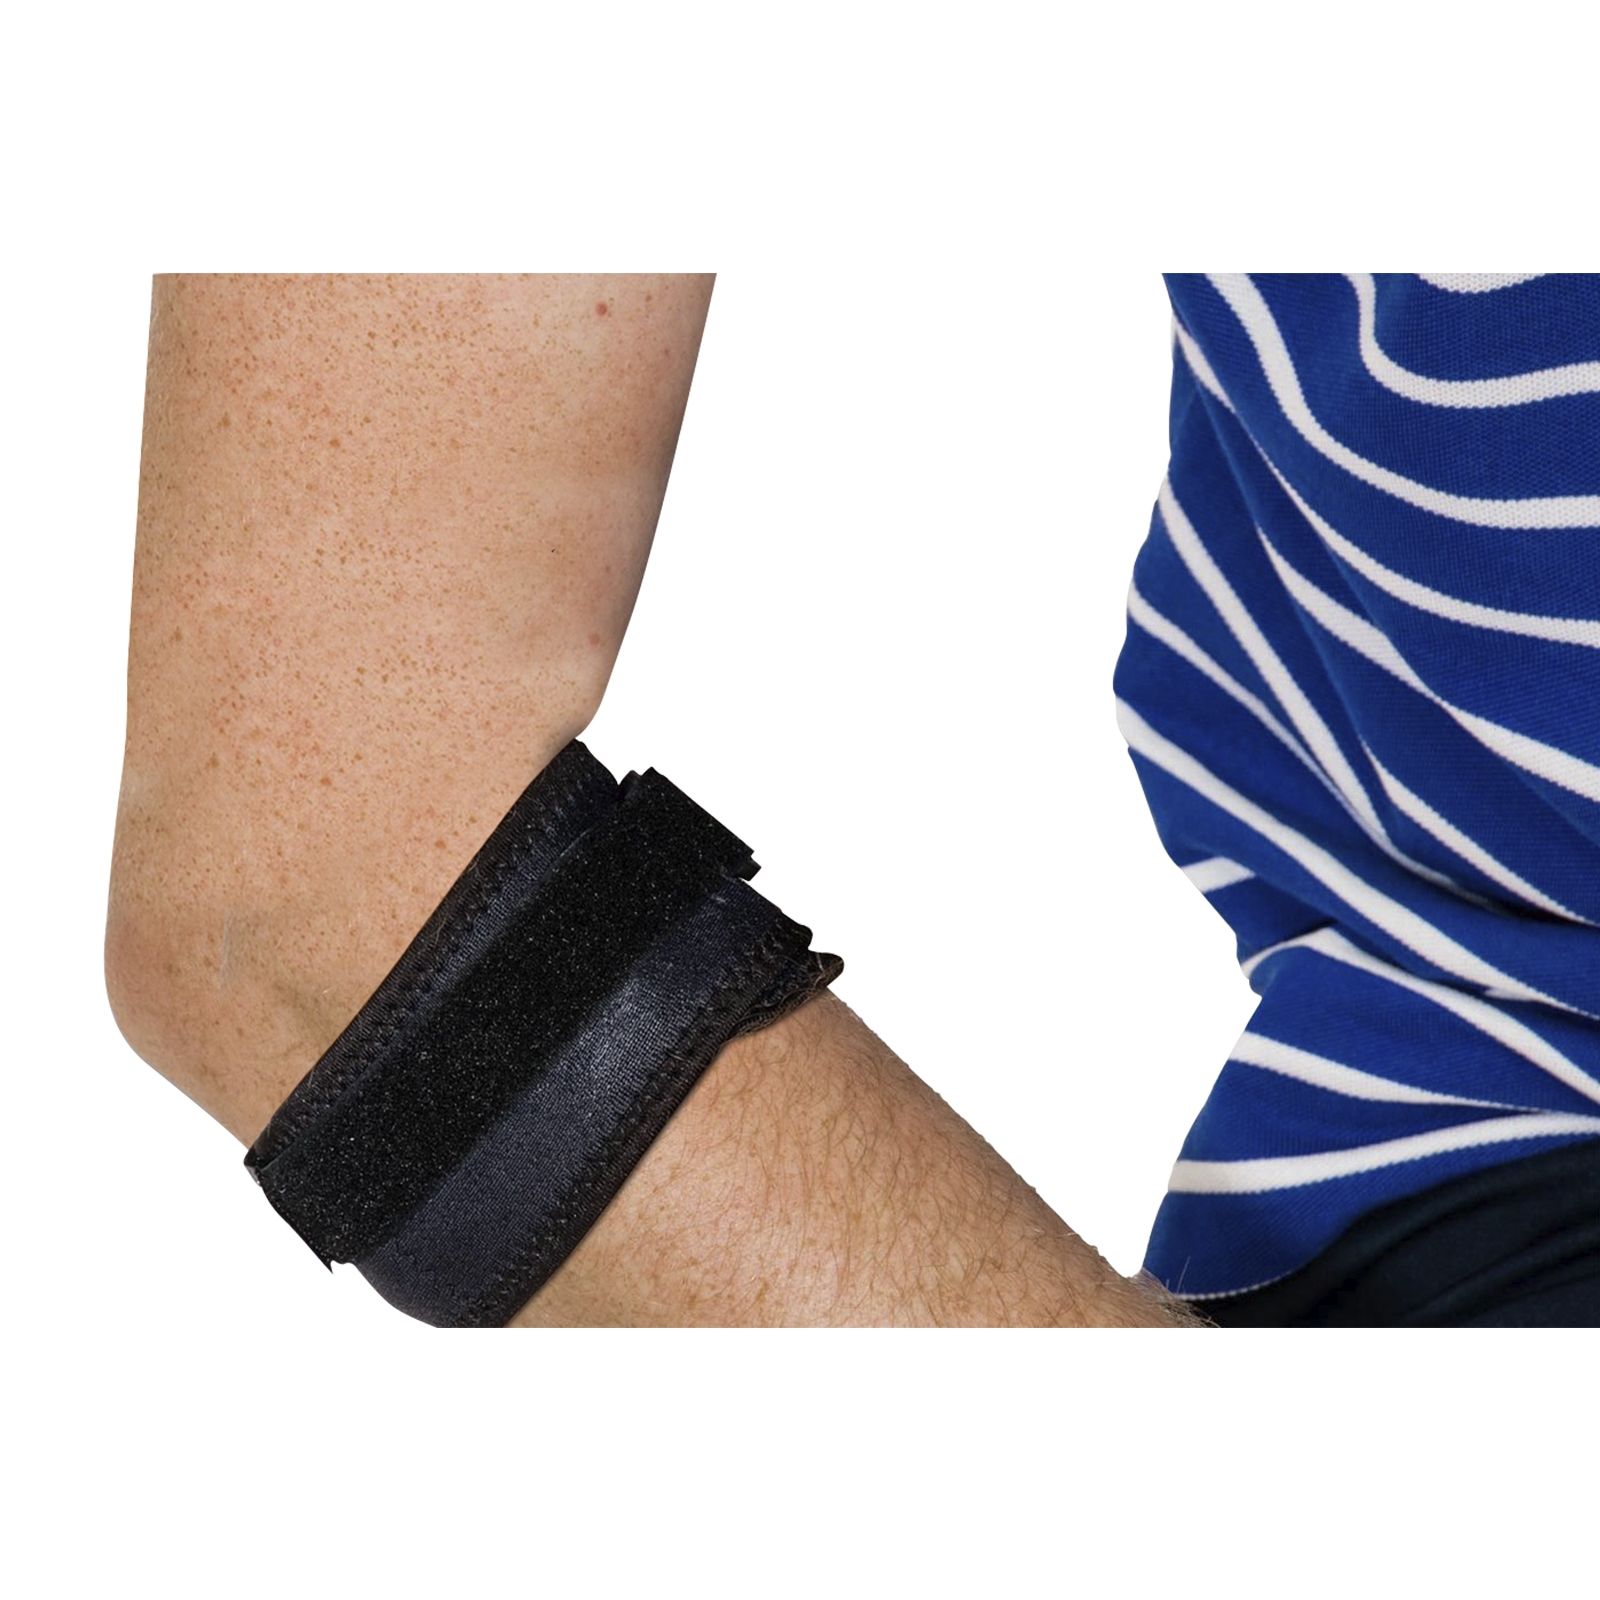 Tennisarm brace | Functioneel en | Laagste prijs